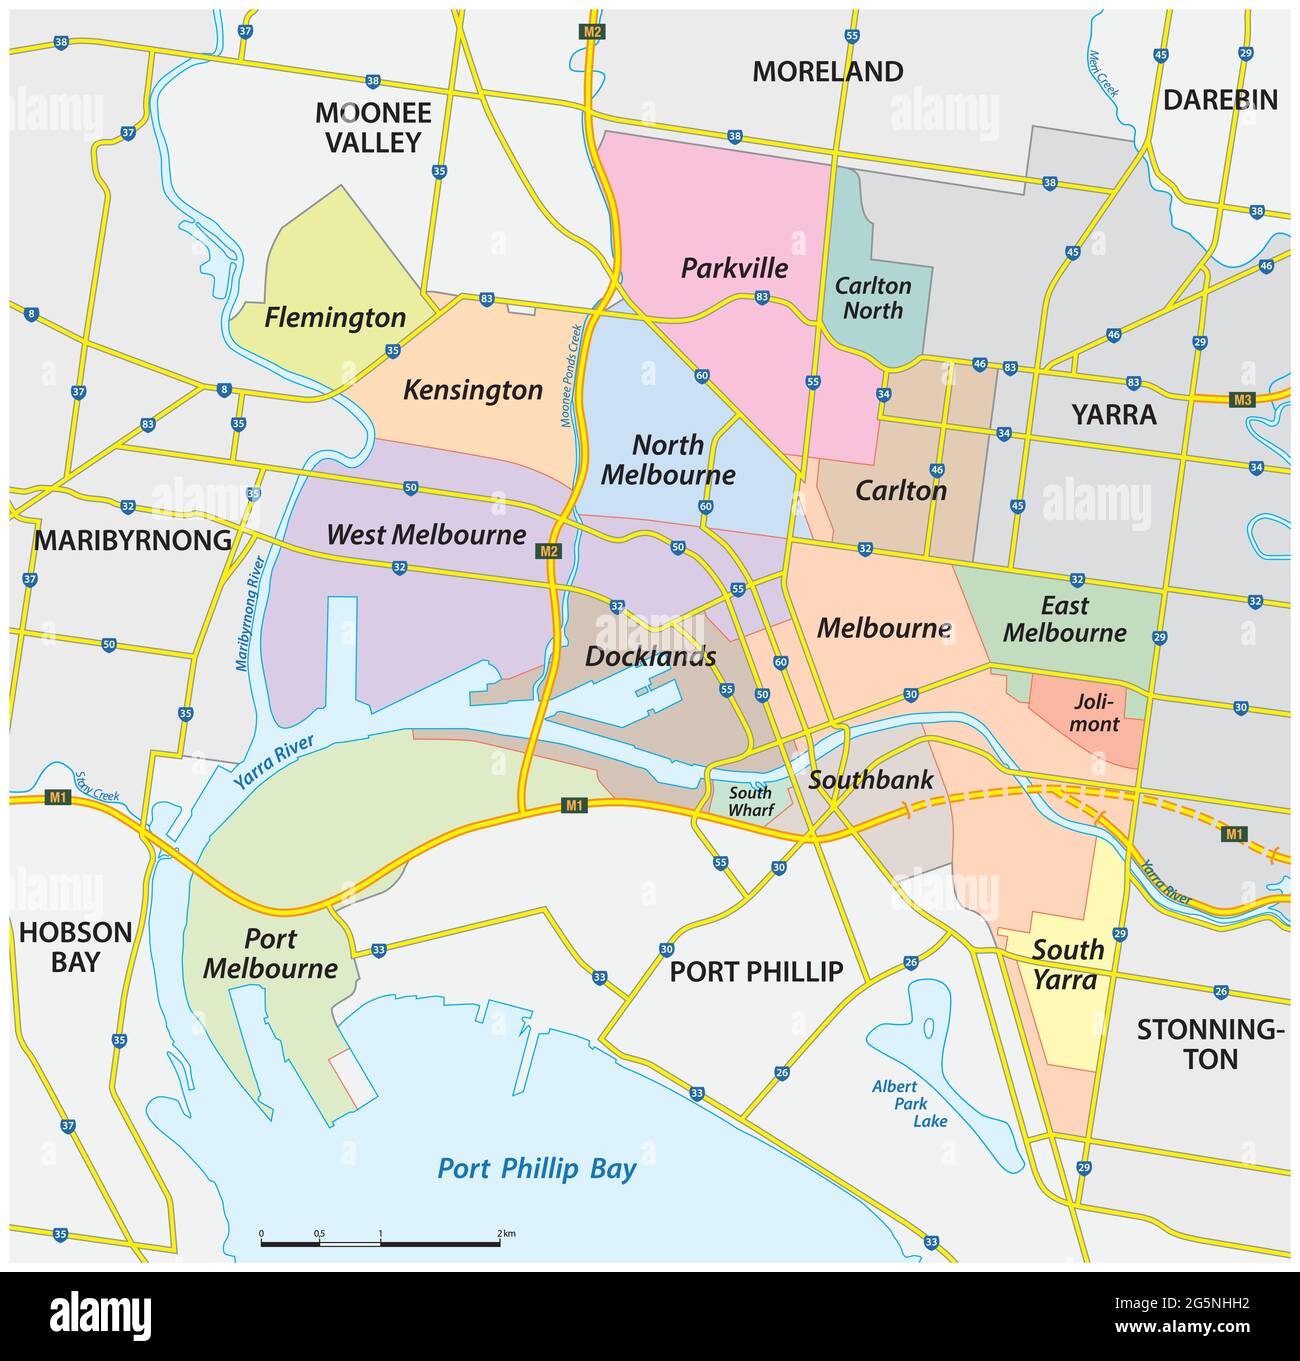 Mappa amministrativa e stradale della città di Melbourne, Victoria, Australia Illustrazione Vettoriale